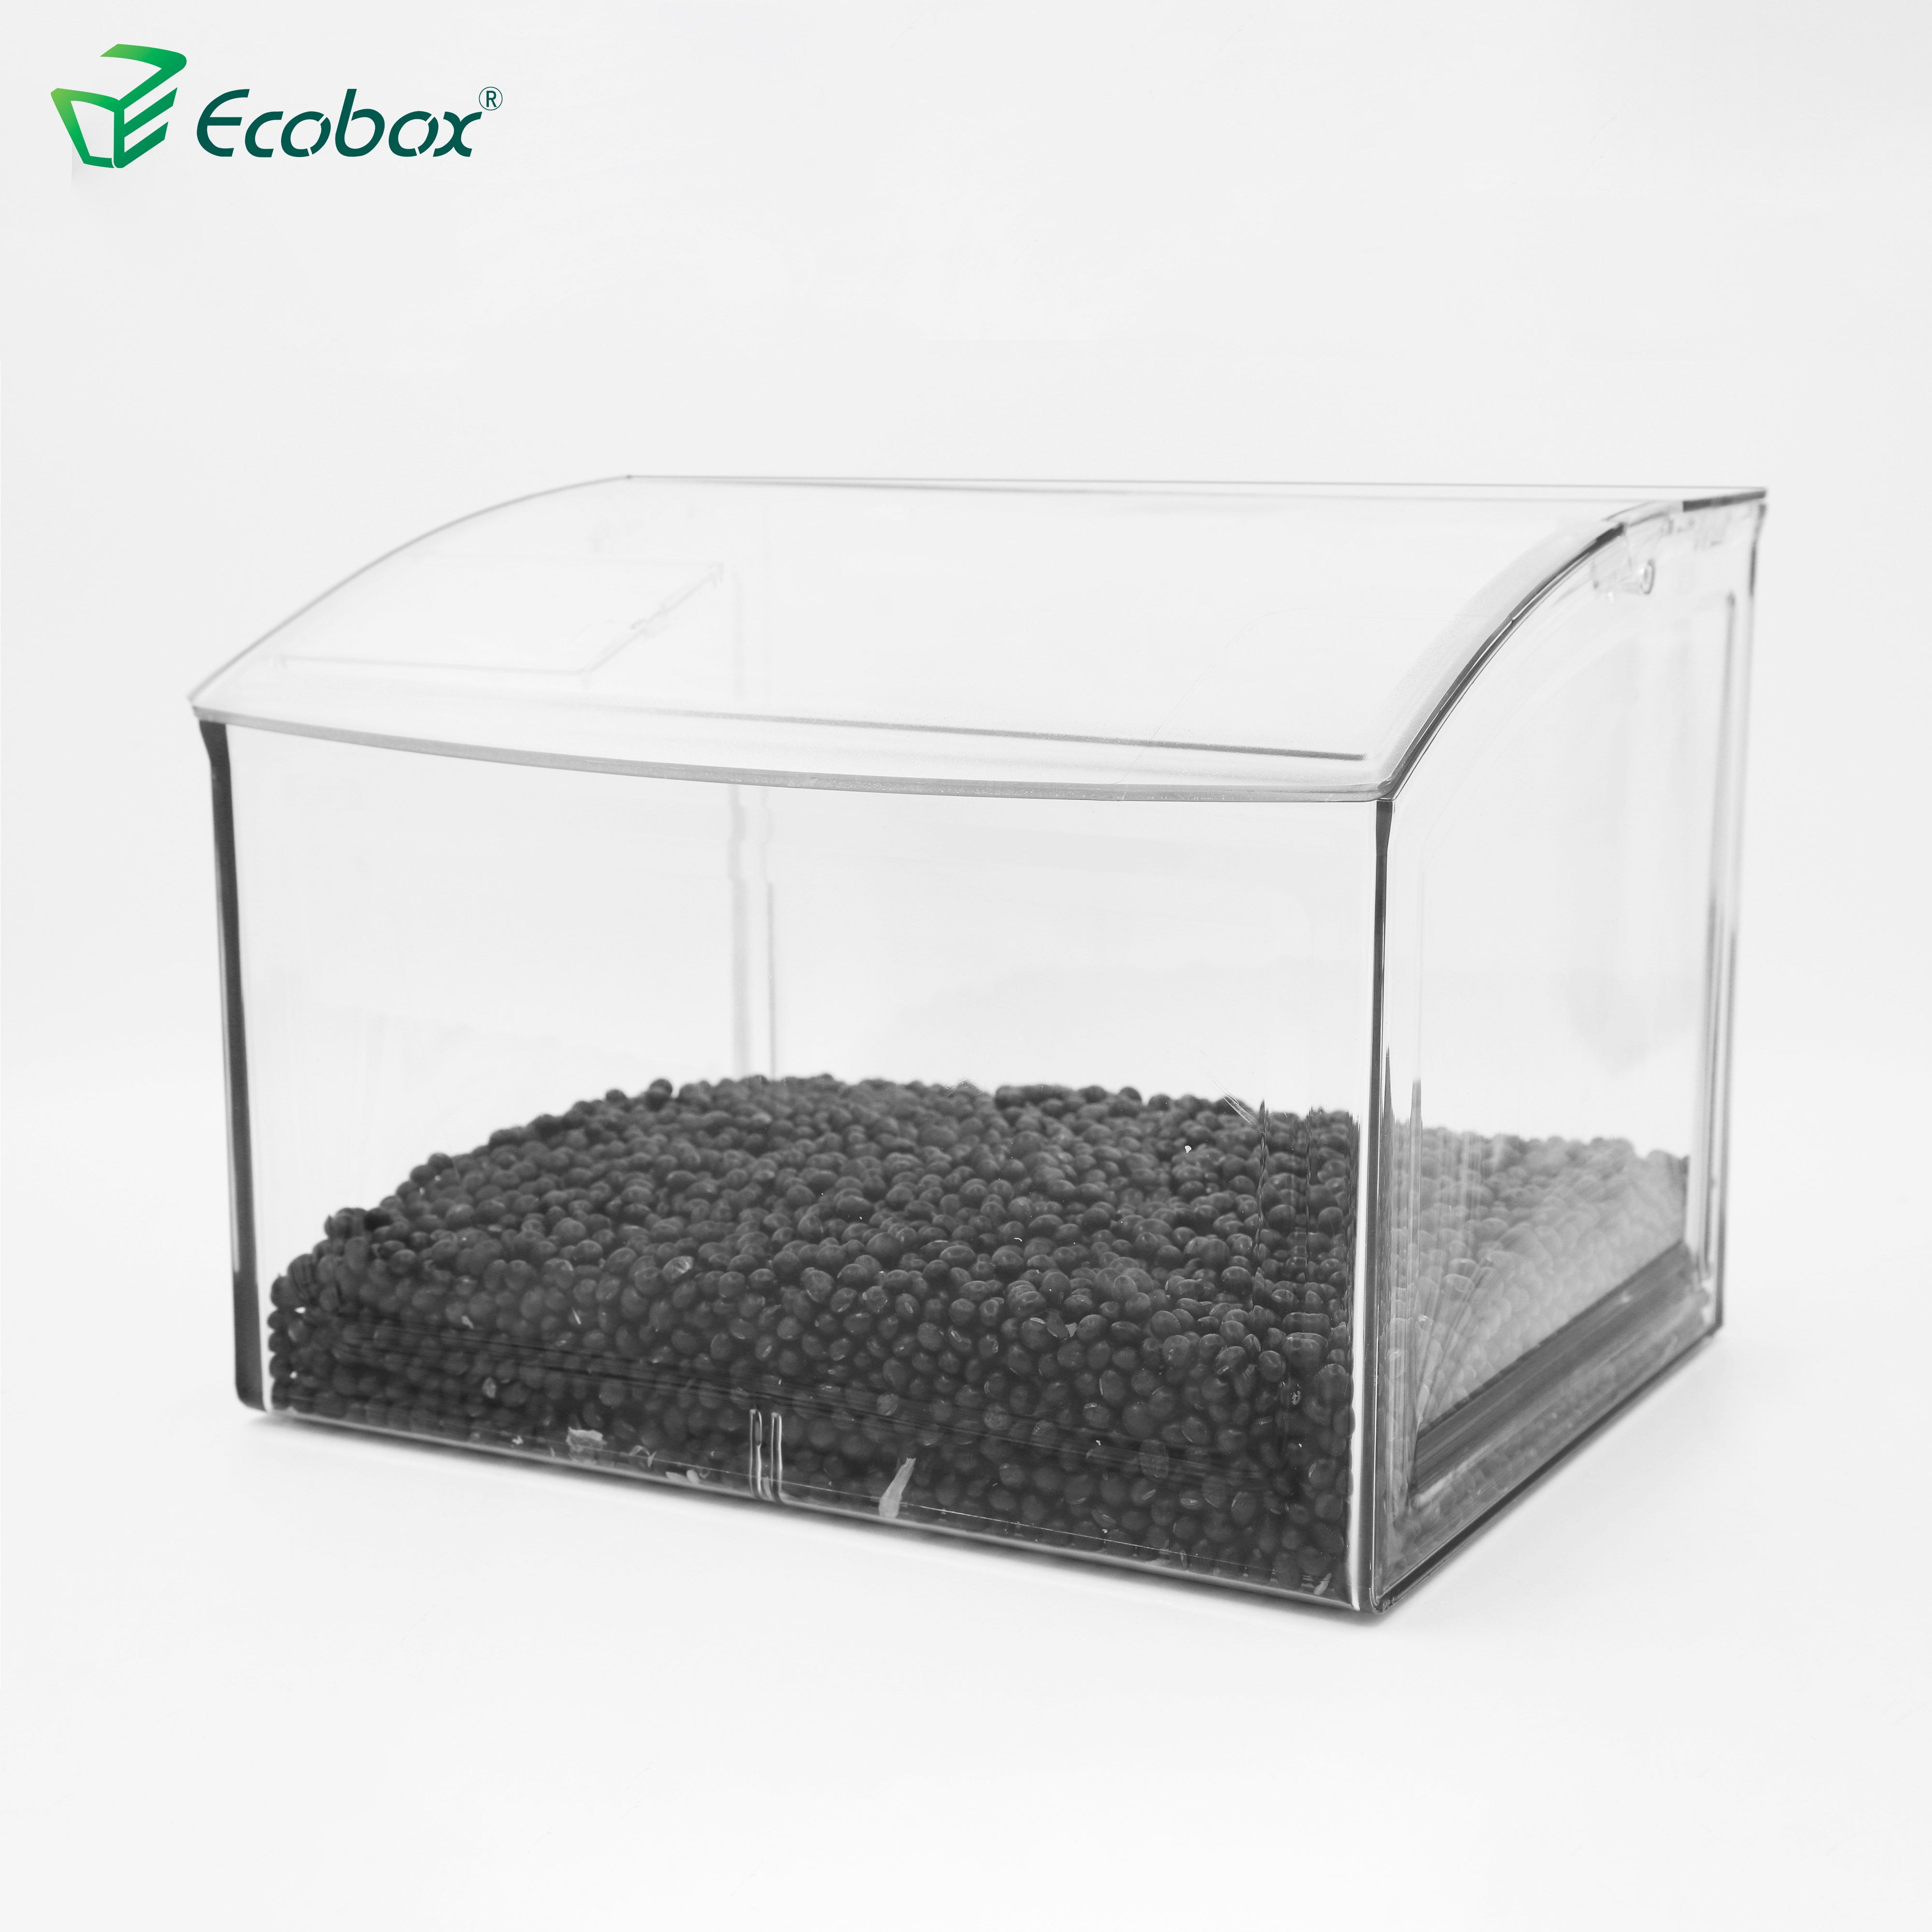 Ecobox Ecofriendly SPH-008 Supermarkt Massennahrungsmittelbehälter für die industrielle Lebensmittel